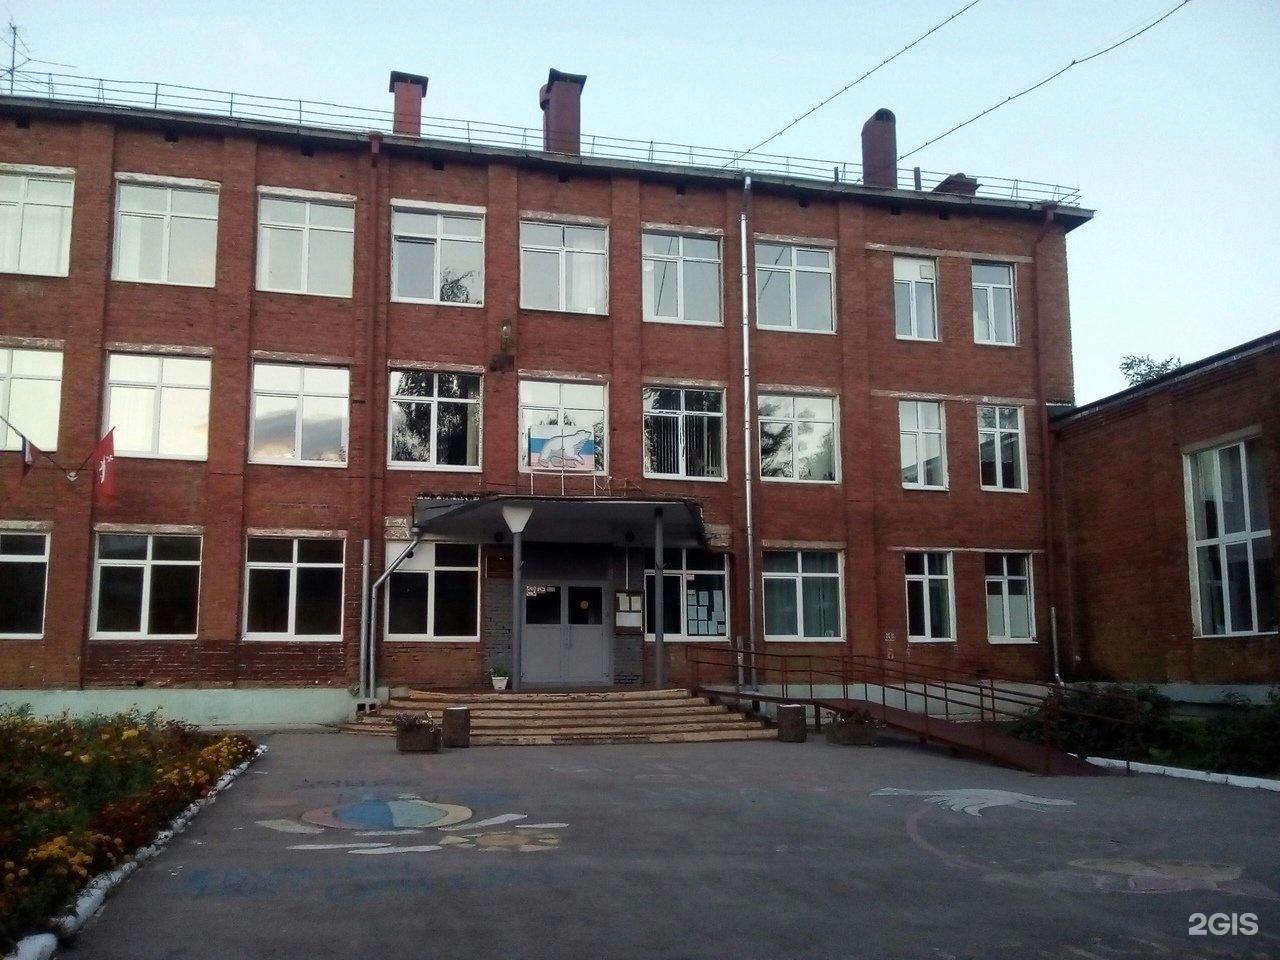 Школа 124 нижний новгород